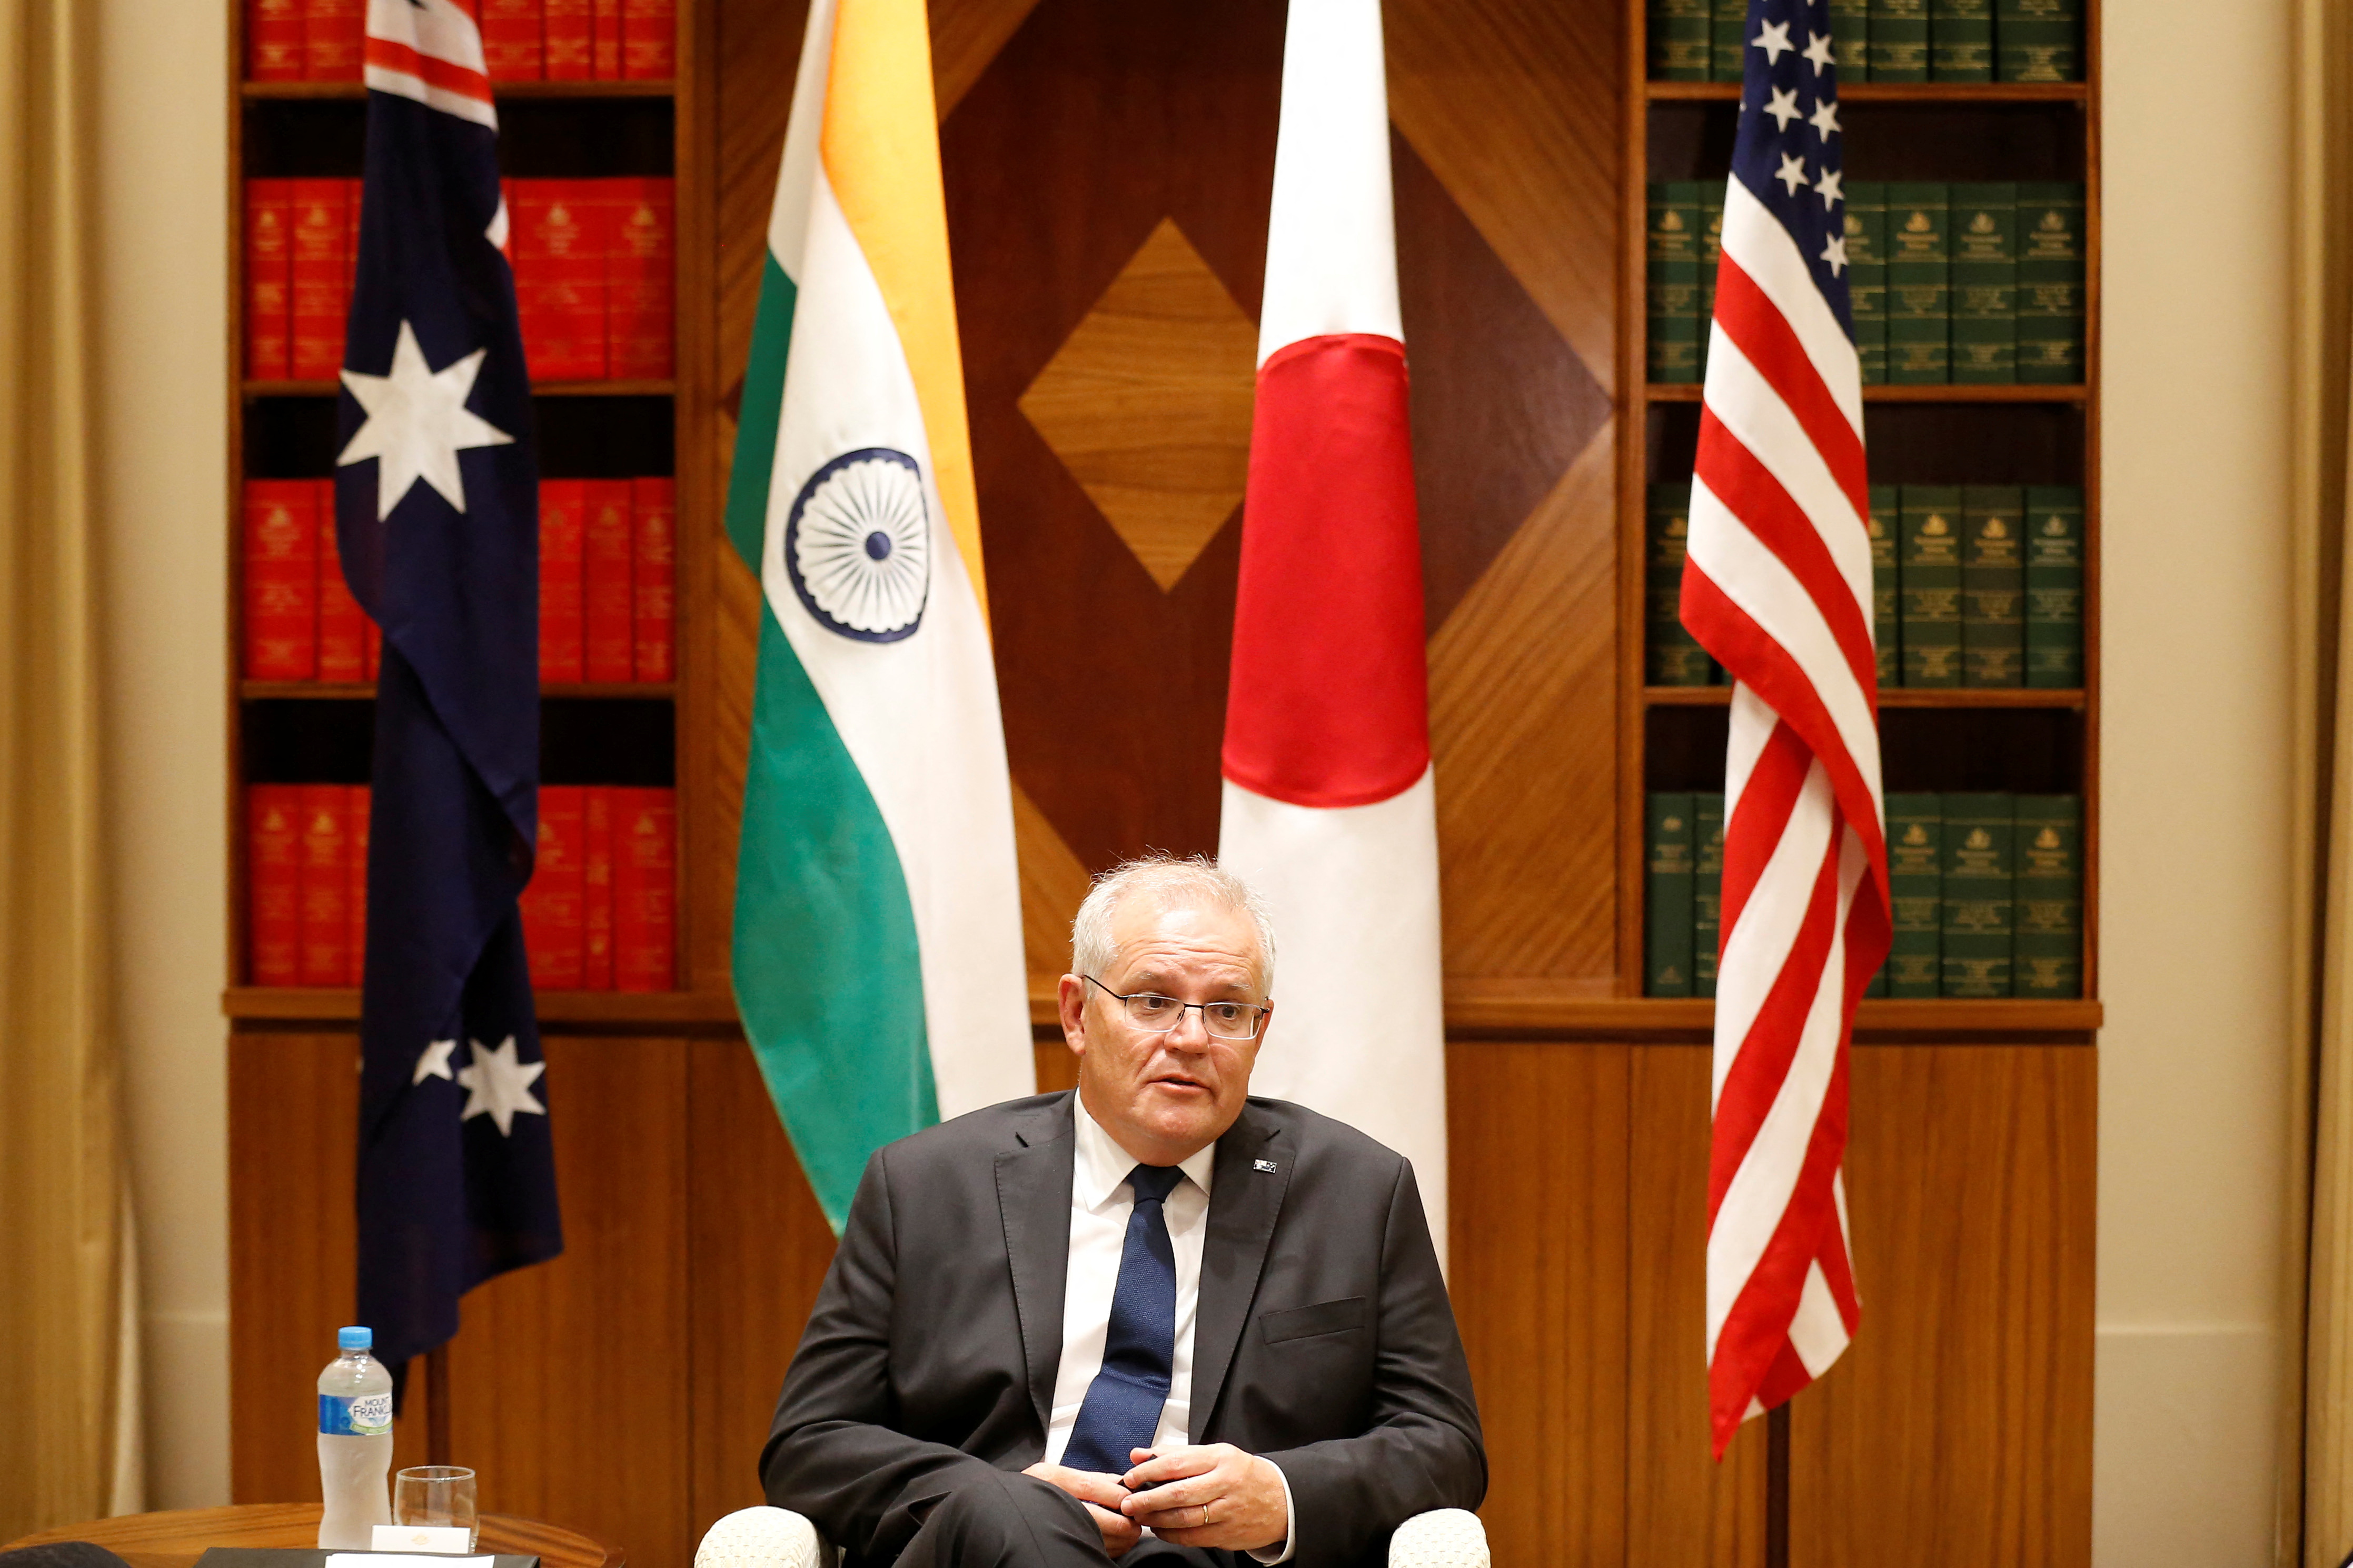 Il primo ministro australiano Scott Morrison parla ai media presso l'Ufficio parlamentare del Commonwealth di Melbourne, in Australia, l'11 febbraio 2022.  Dorian Trainer / Pool via REUTERS